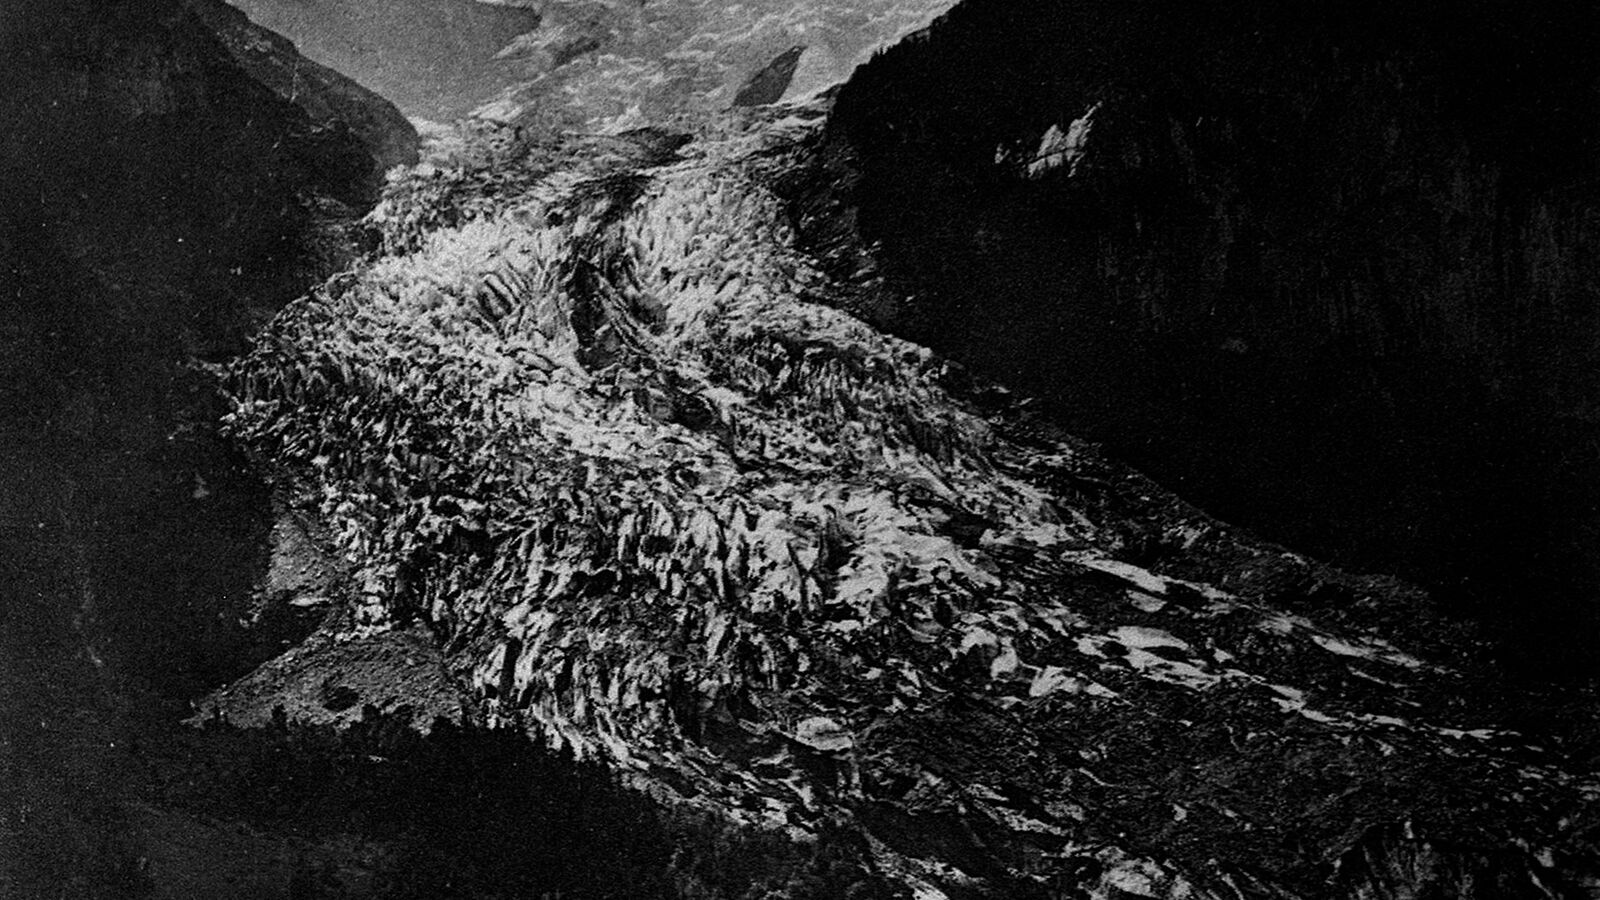 Unterer Grindelwaldgletscher 1858